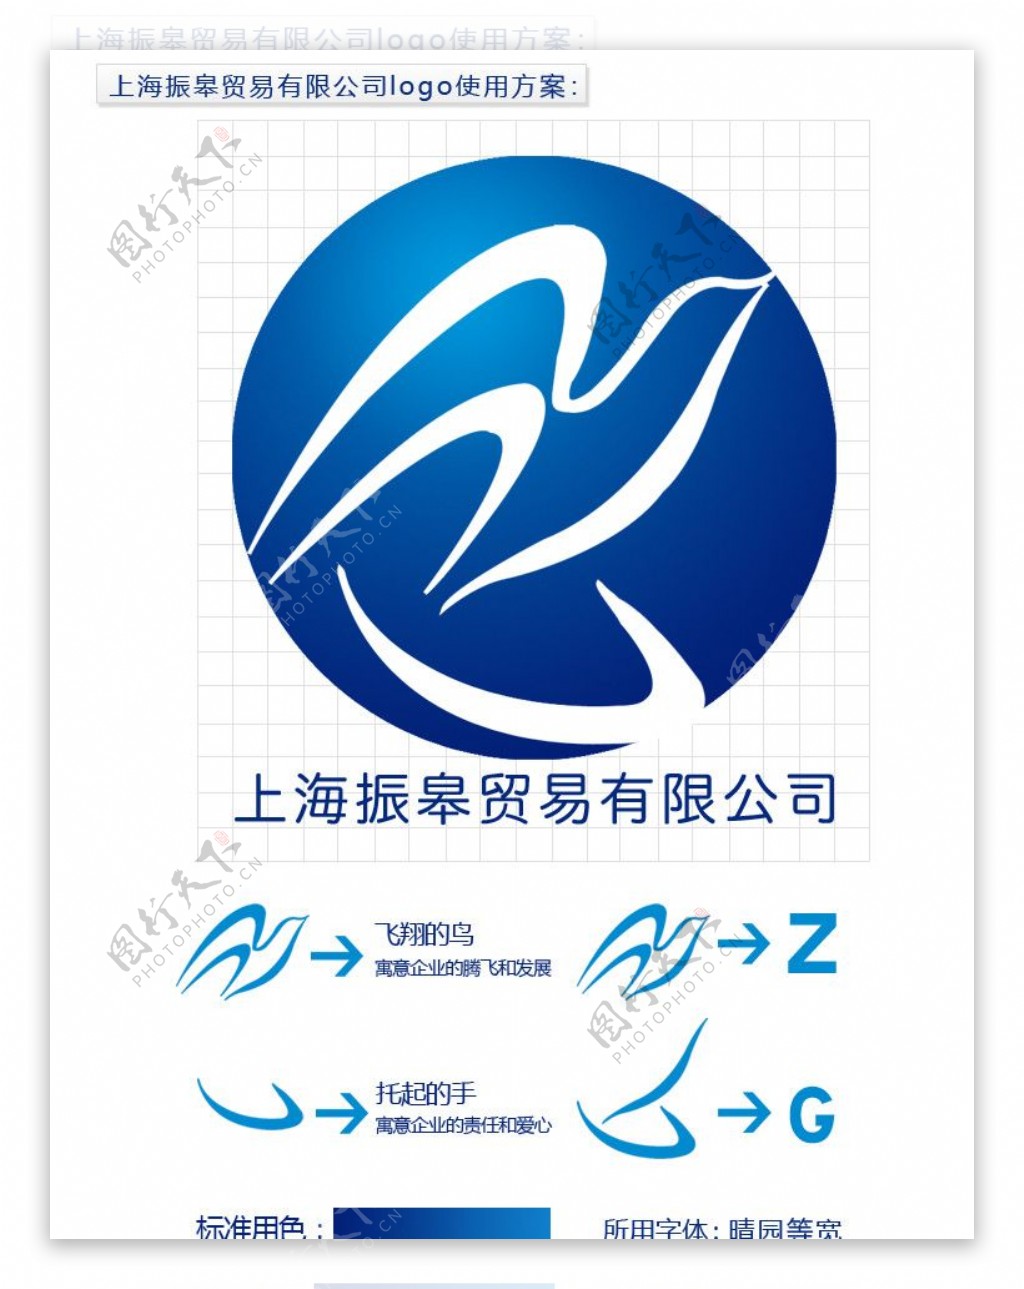 上海振皋贸易有限公司logo图片